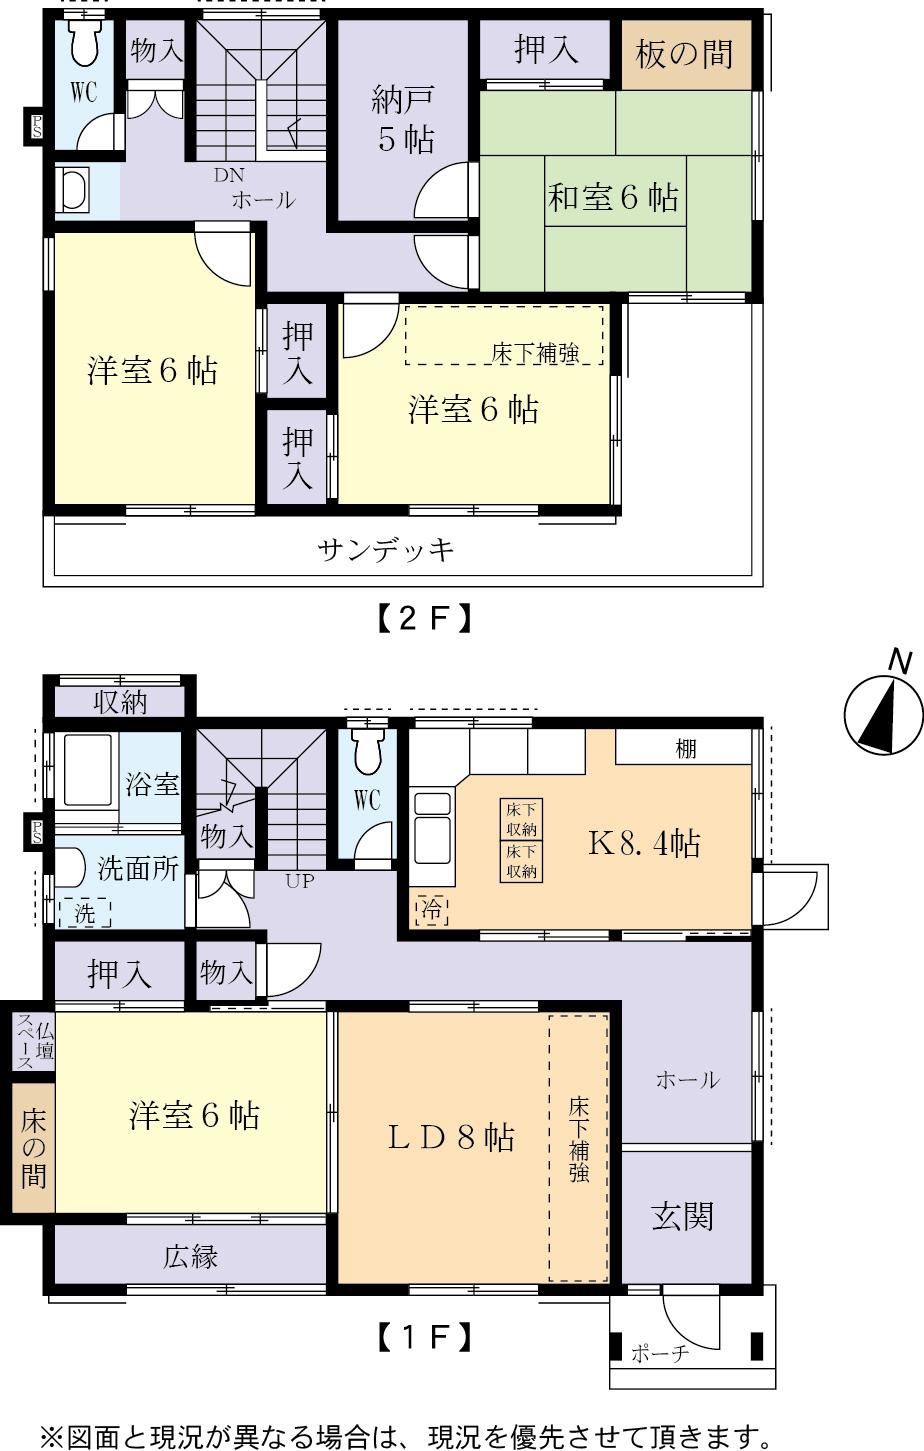 Floor plan. 19,800,000 yen, 4LDK + S (storeroom), Land area 207.68 sq m , Building area 125.97 sq m